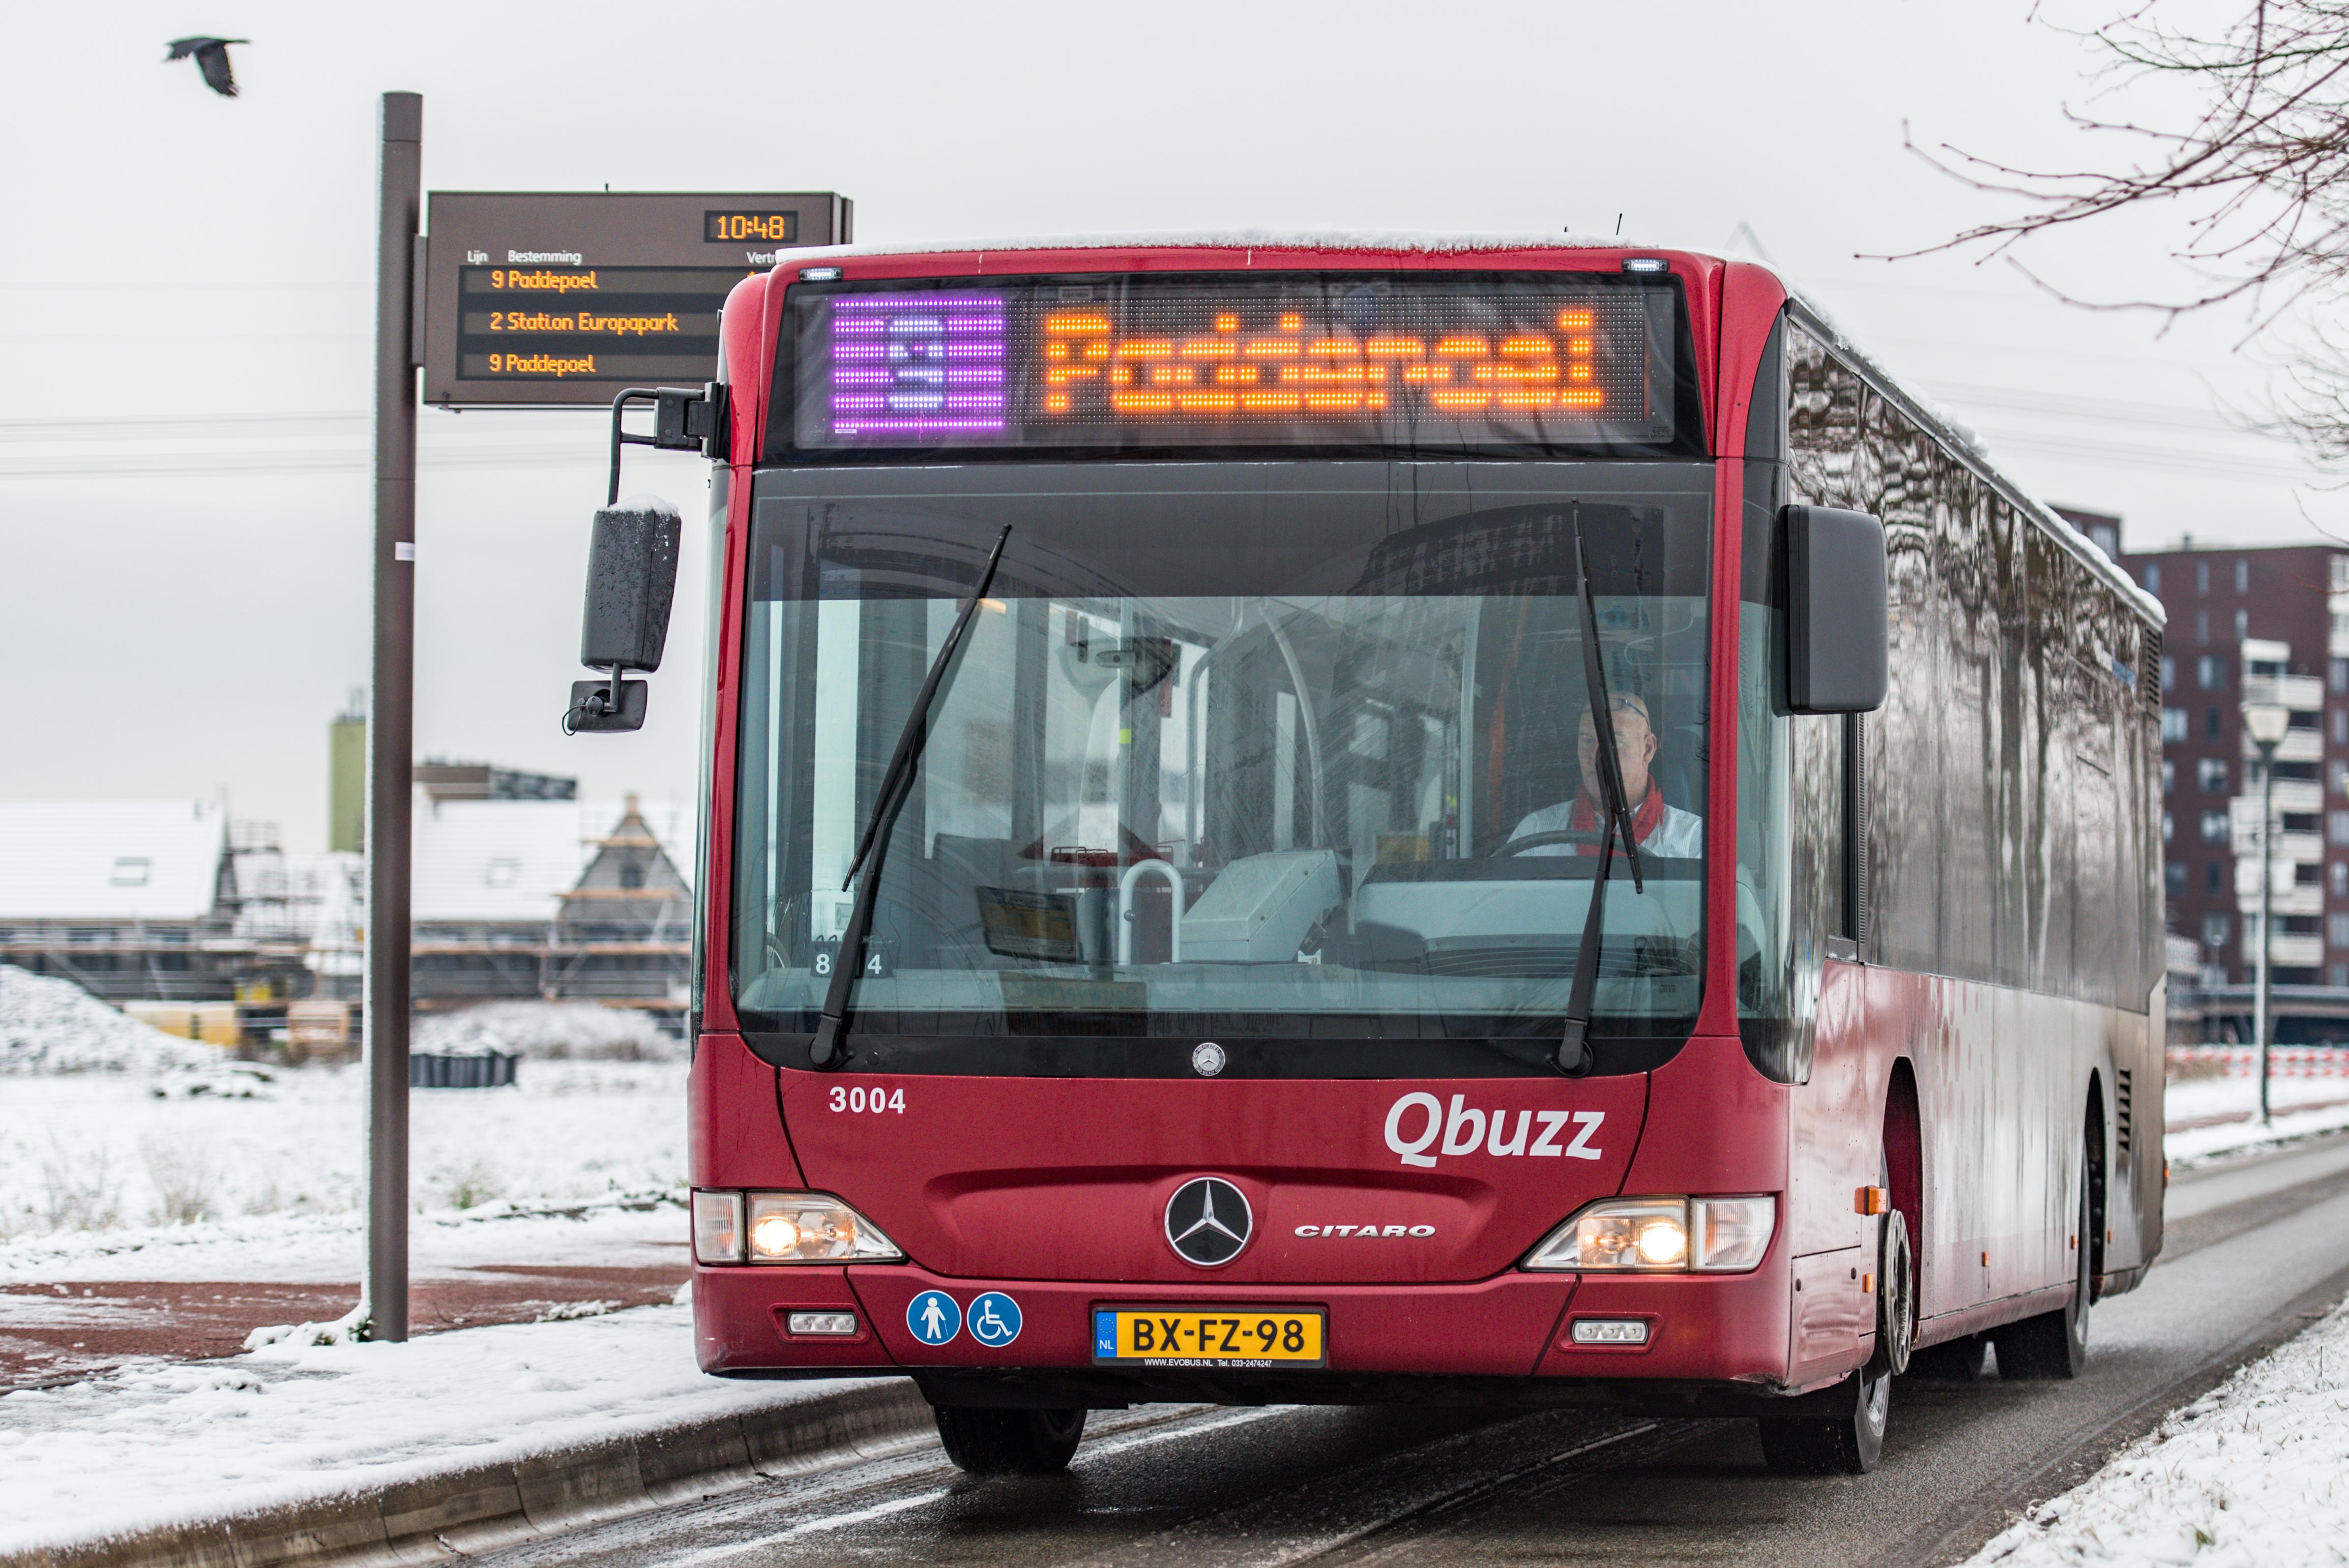 envelop Structureel elke keer Qbuzz schaft contant betalen in bussen af | Geld | Telegraaf.nl